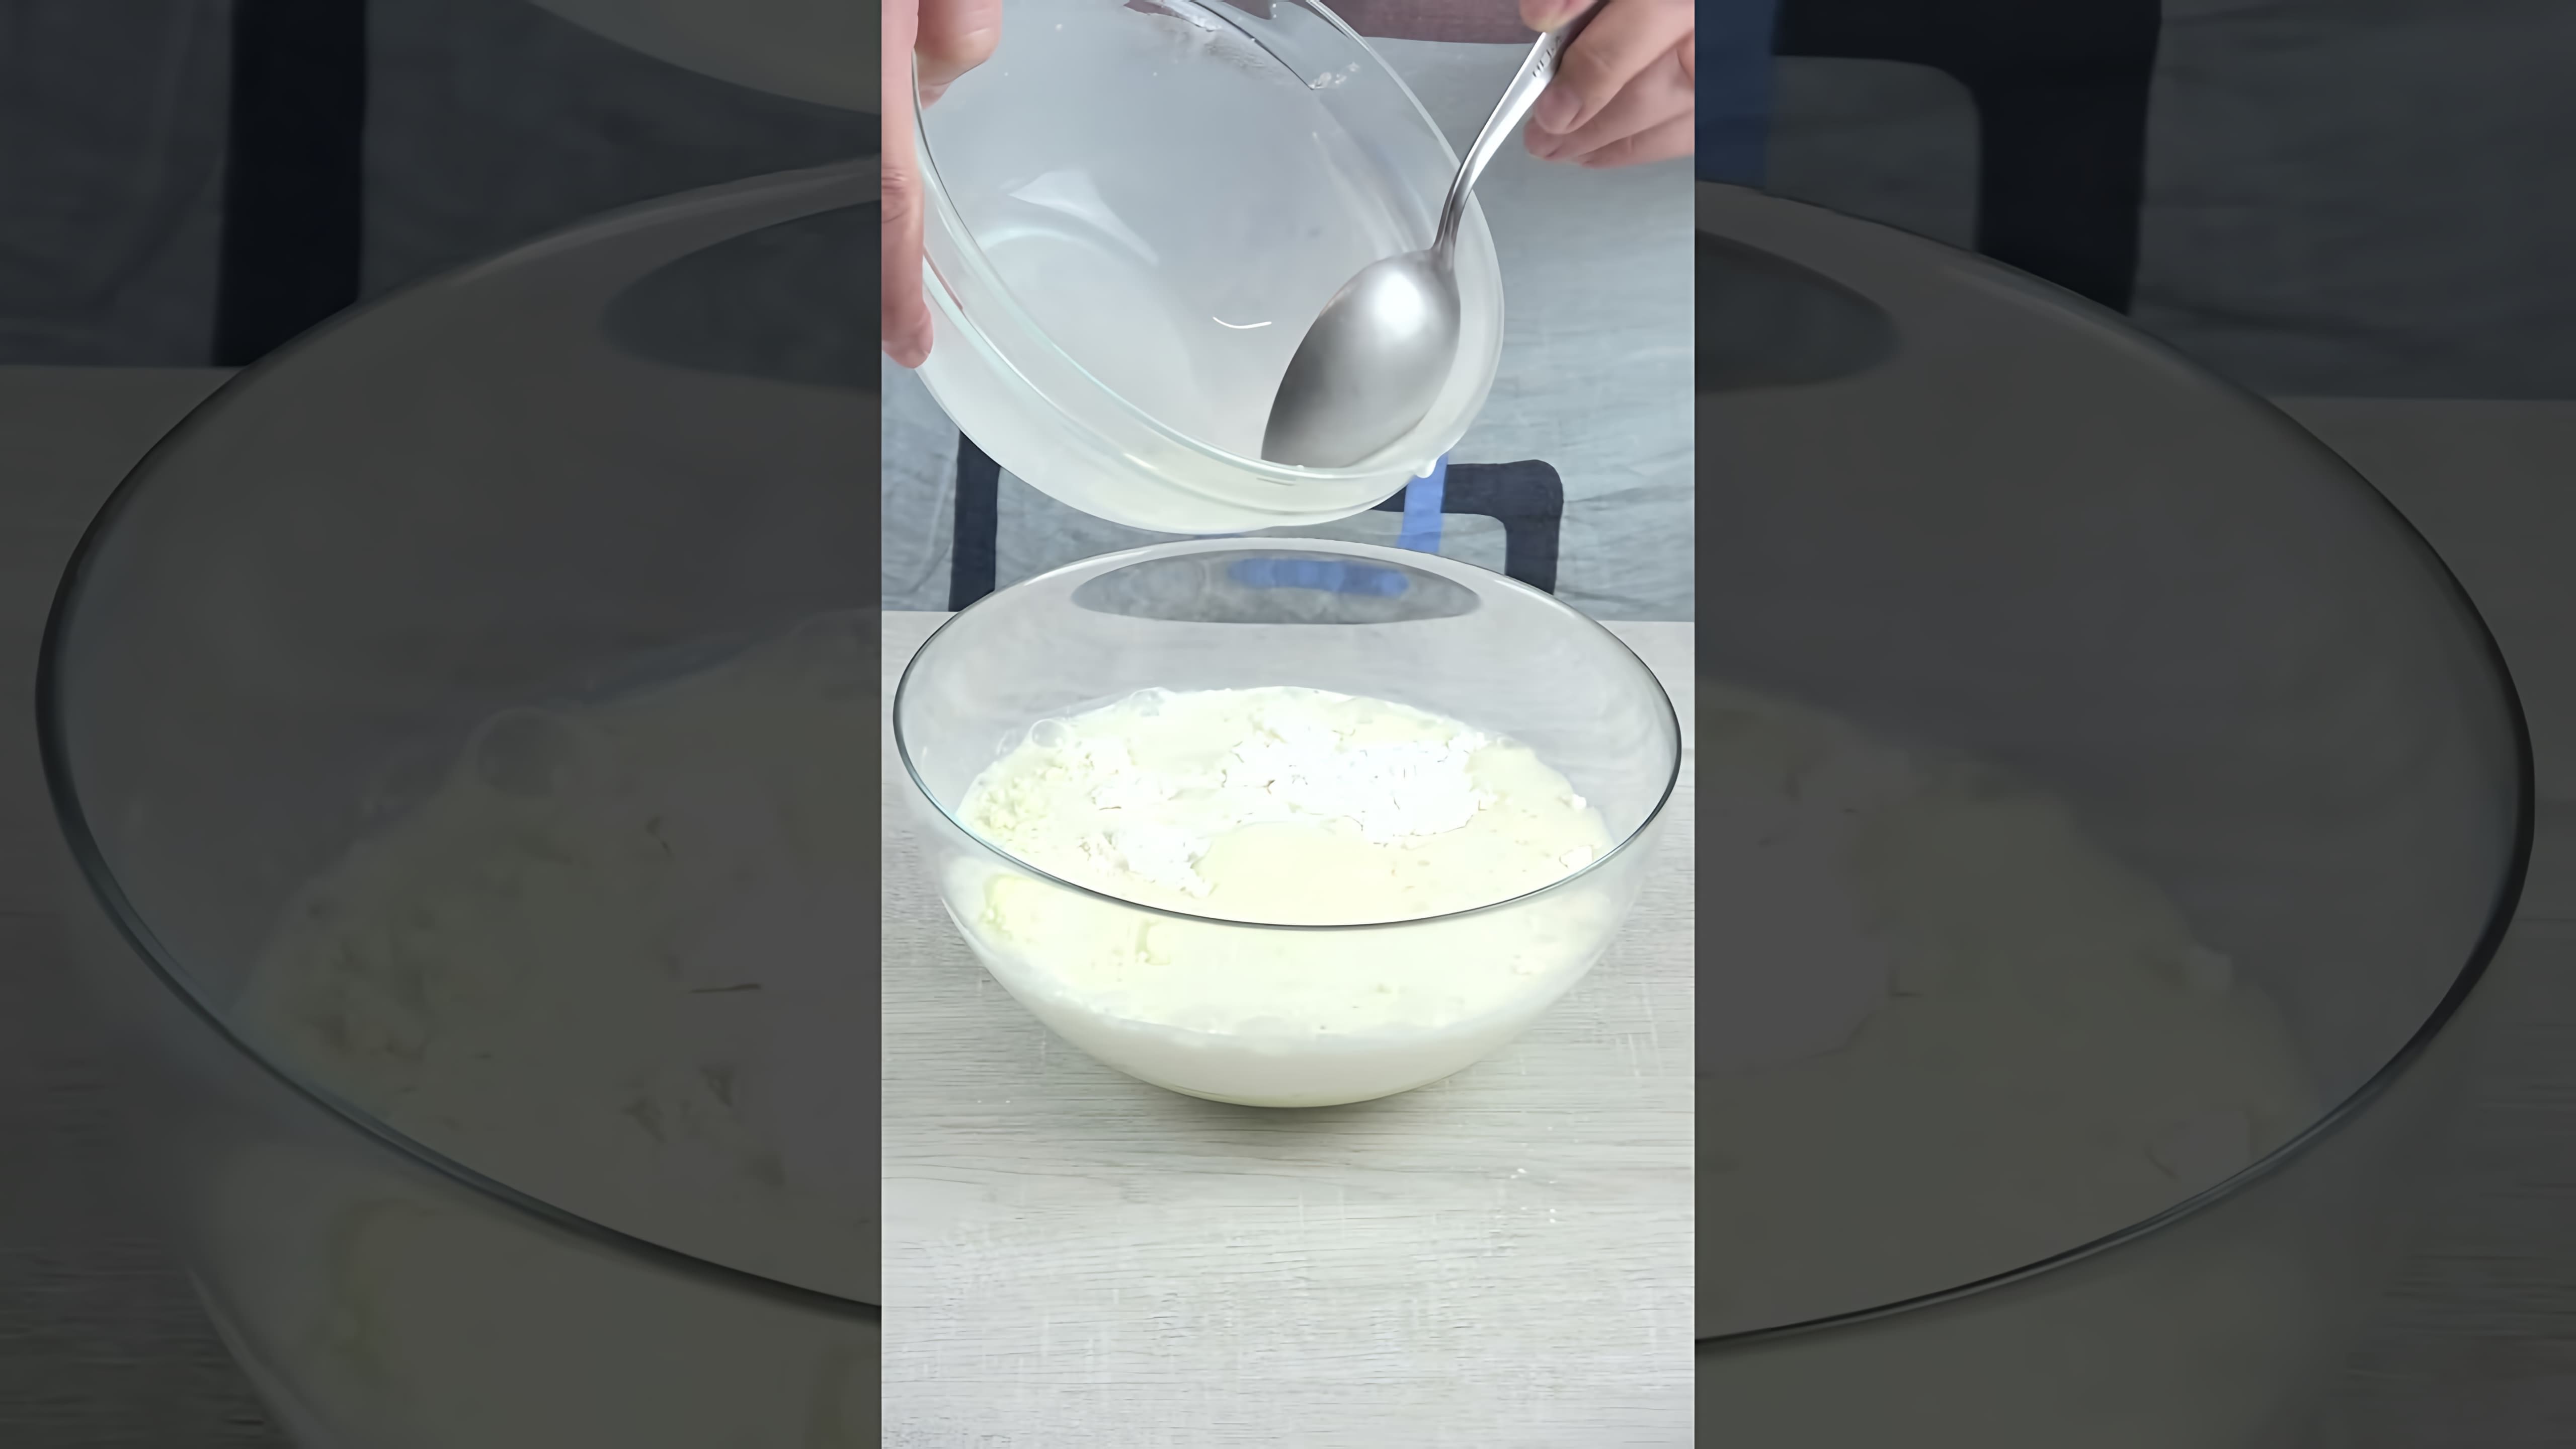 В этом видео демонстрируется процесс приготовления вкусного крема за 5 минут